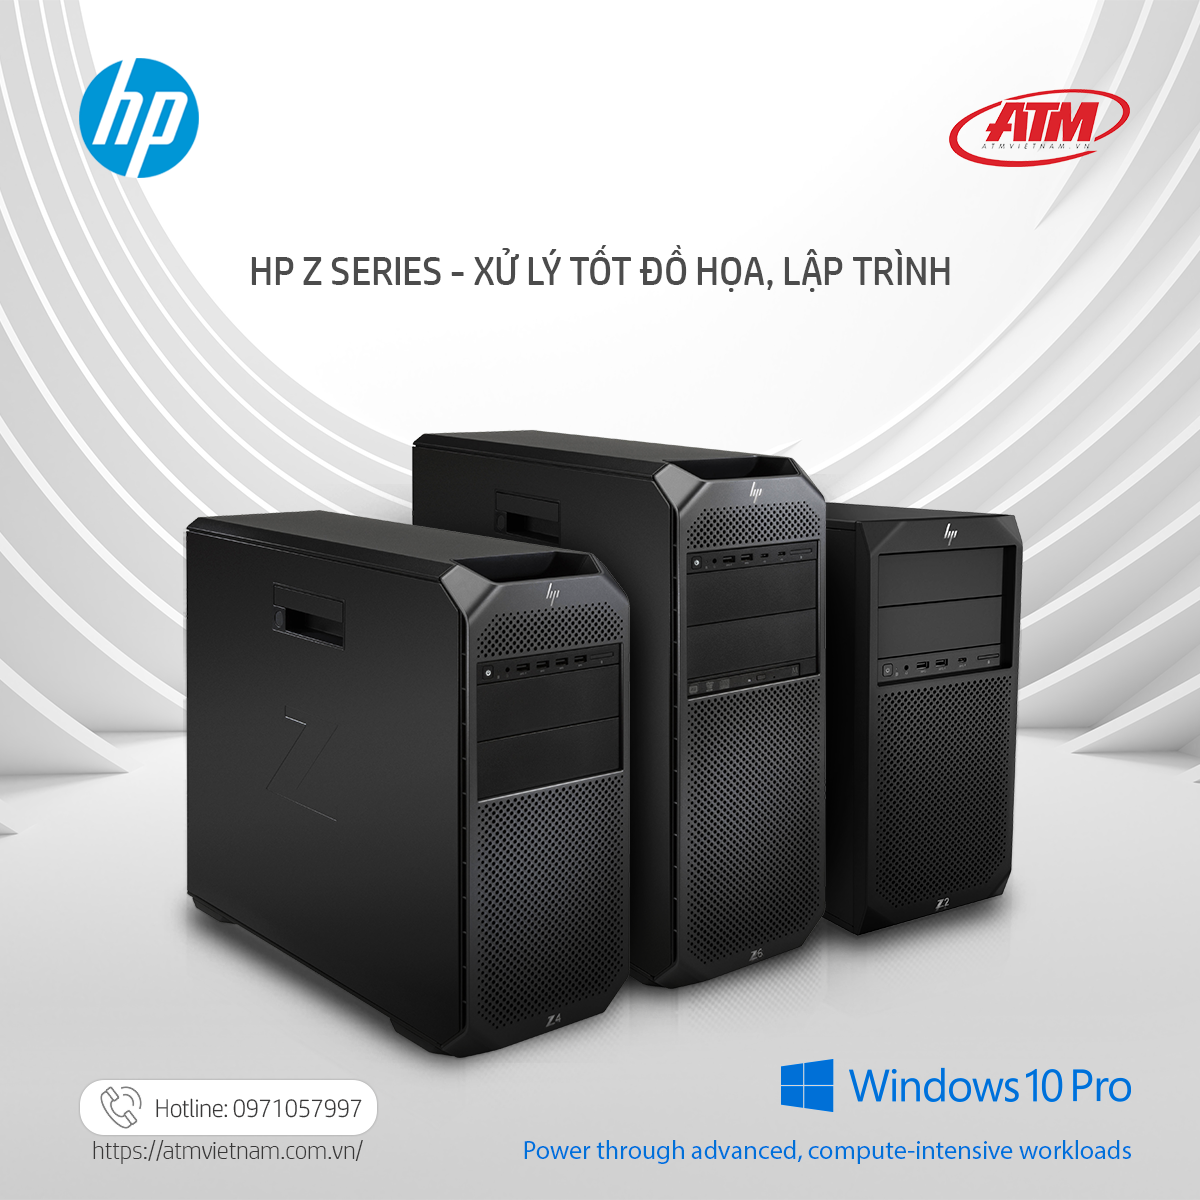 HP Z Series: Giải pháp công nghệ tuyệt vời cho doanh nghiệp IT, thiết kế, production house